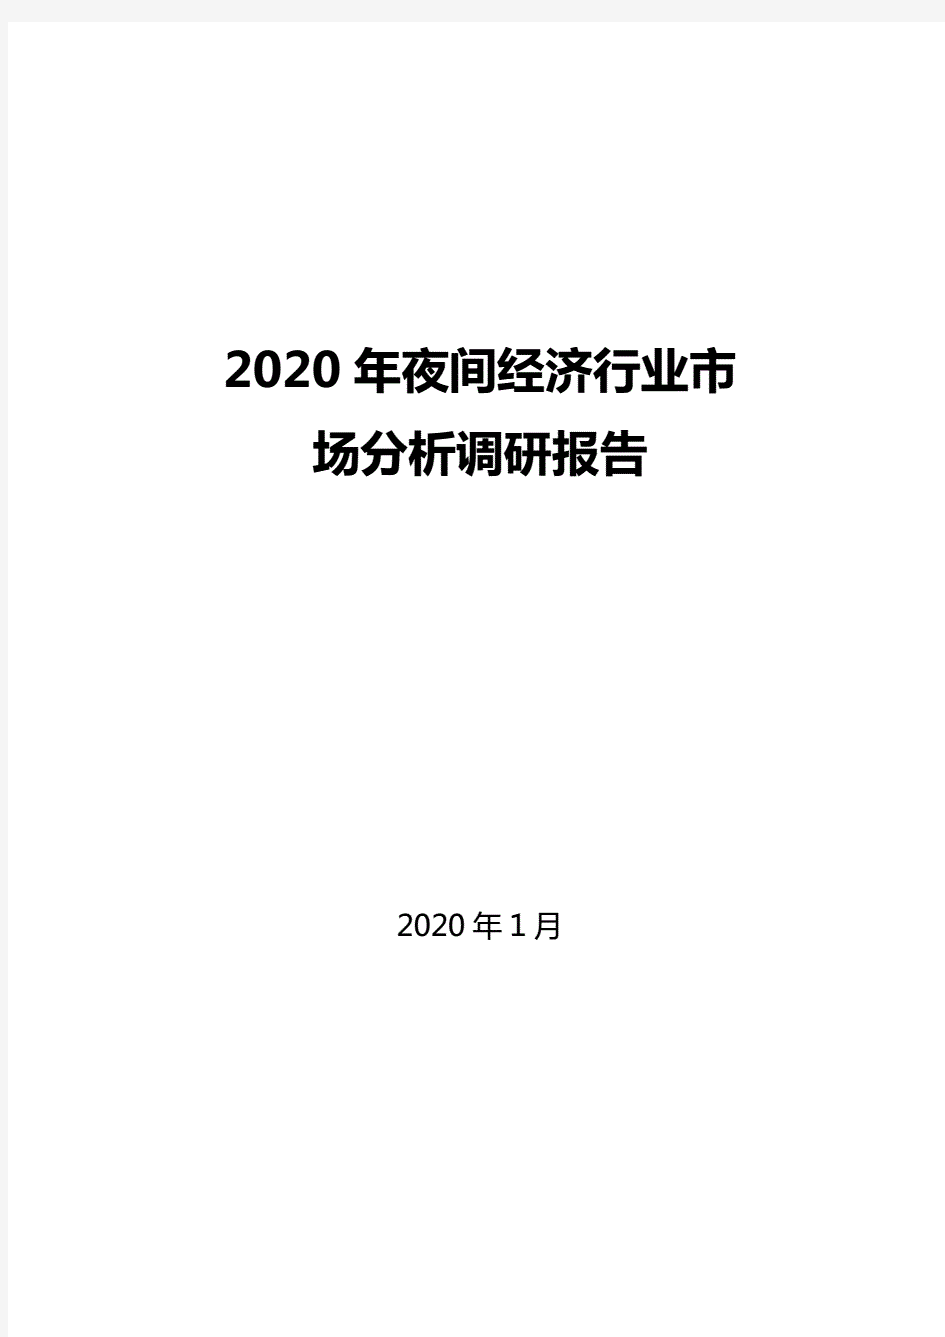 2020年夜间经济行业市场分析调研报告.